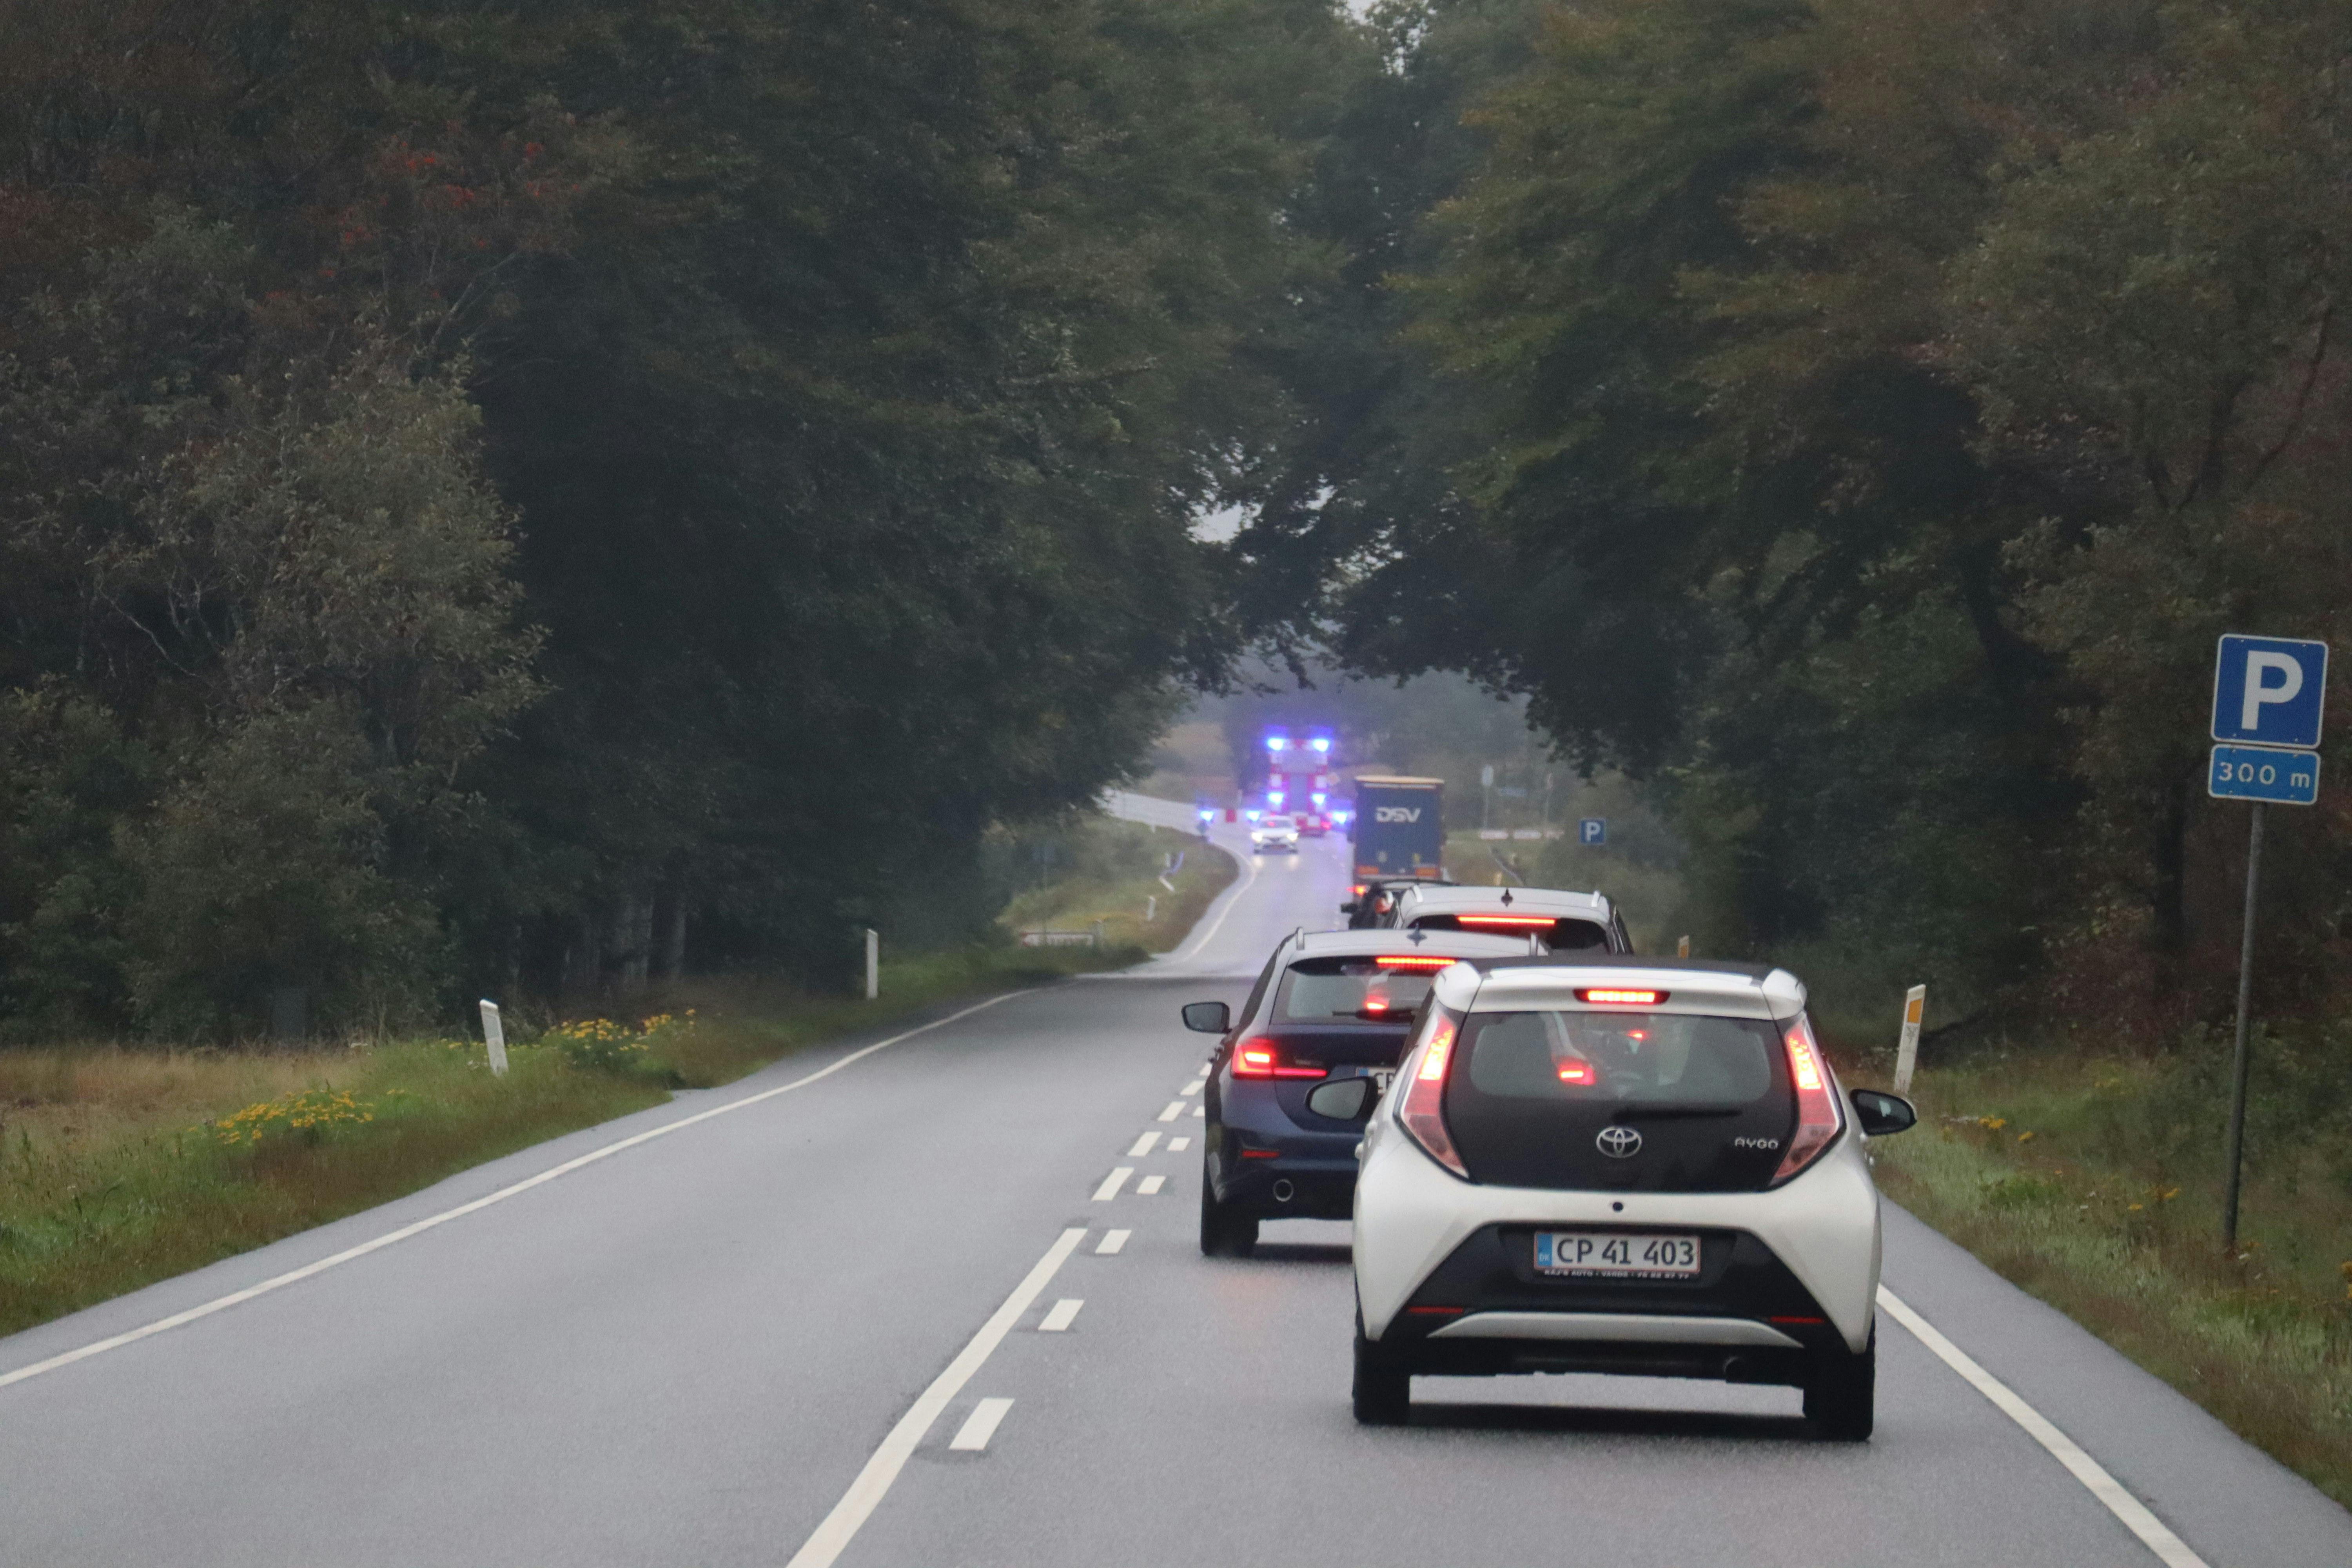 En person er død og en er alvorligt kvæstet efter et trafikuheld ved Varde i Vestjylland.